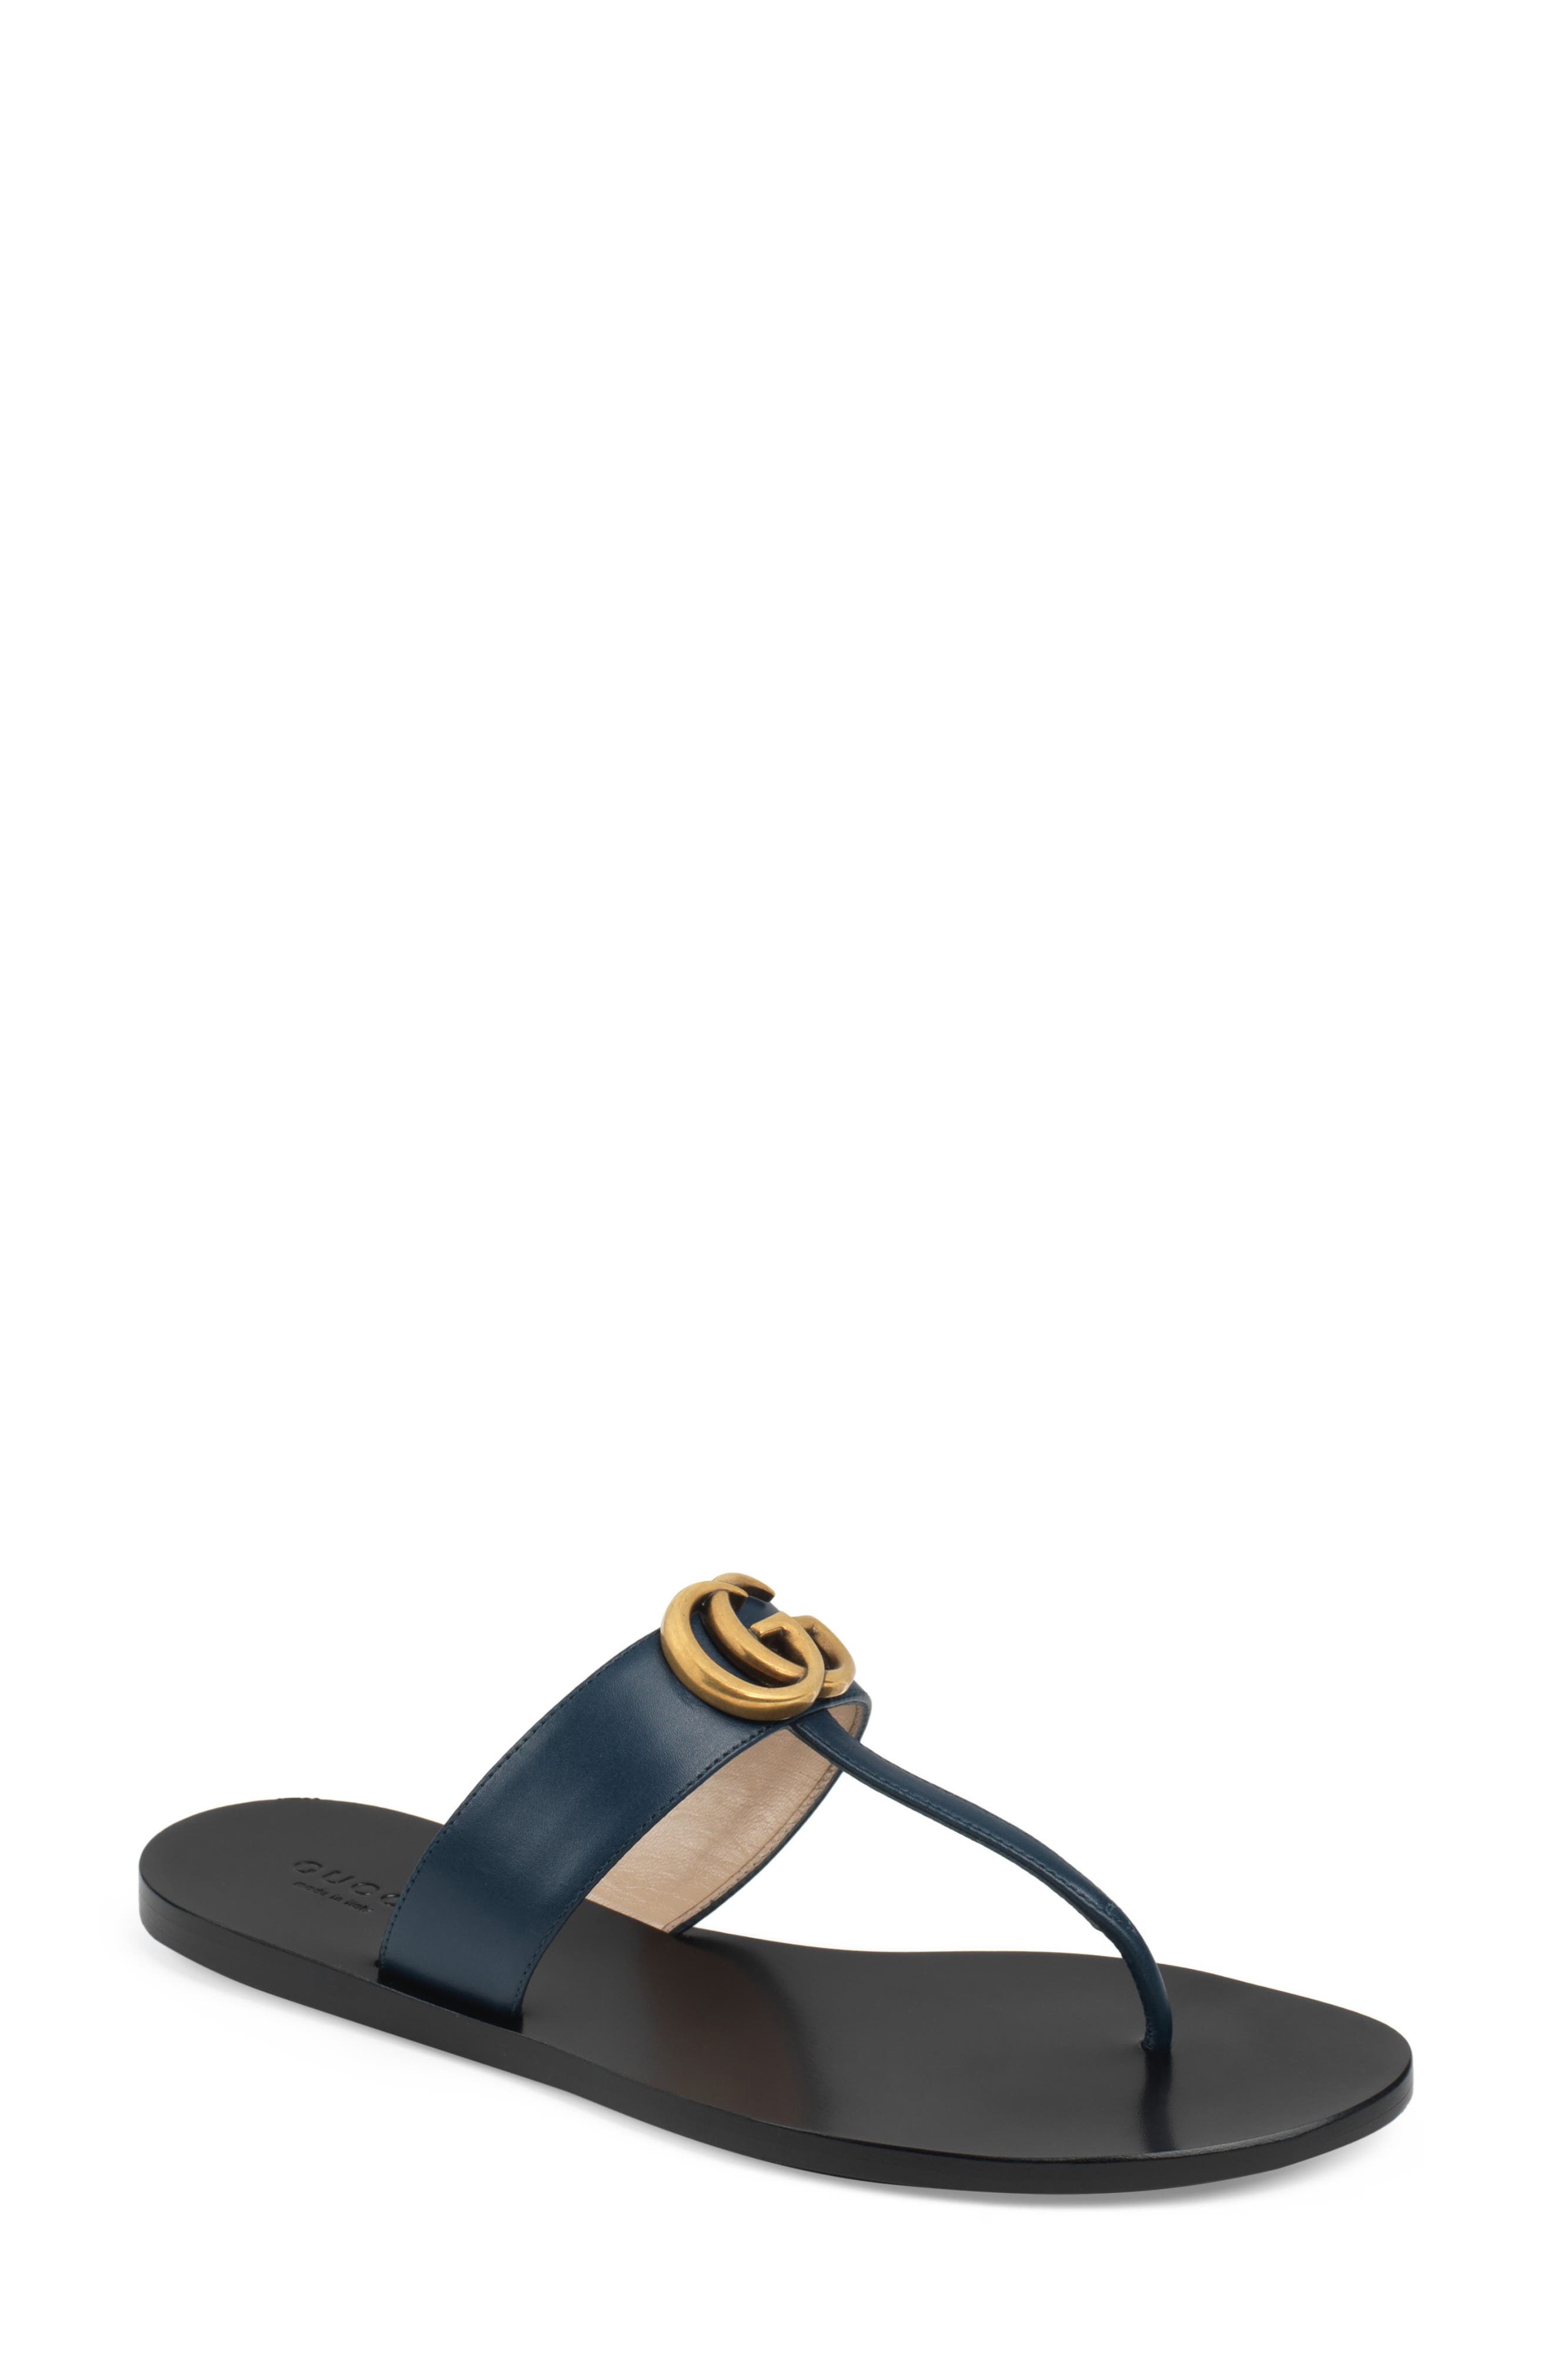 gucci sandals black